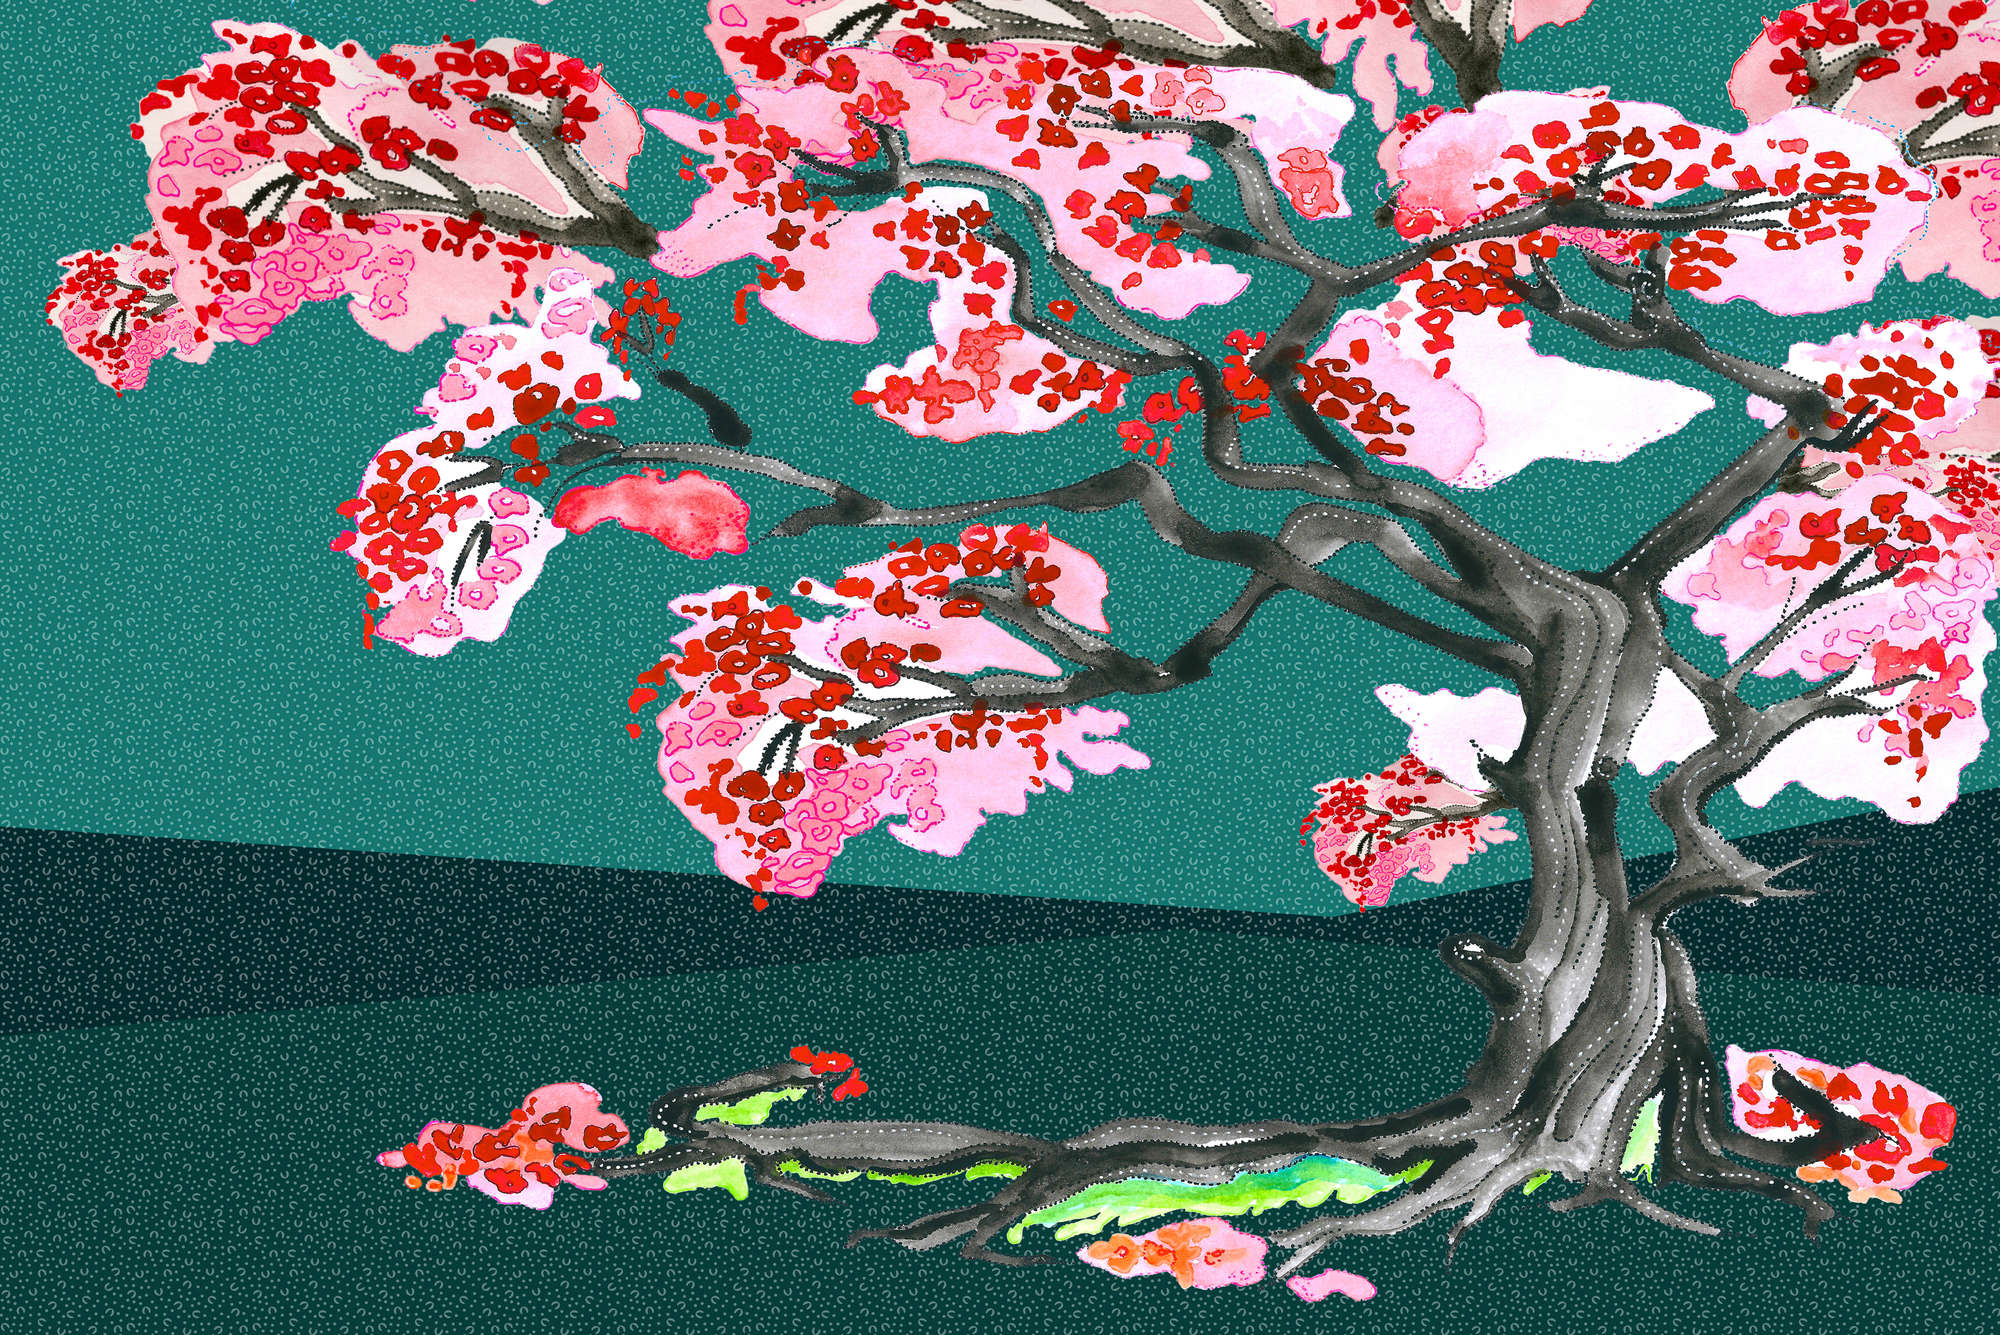             Carta da parati con fiori di ciliegio in stile fumetto asiatico su tessuto non tessuto liscio opaco
        